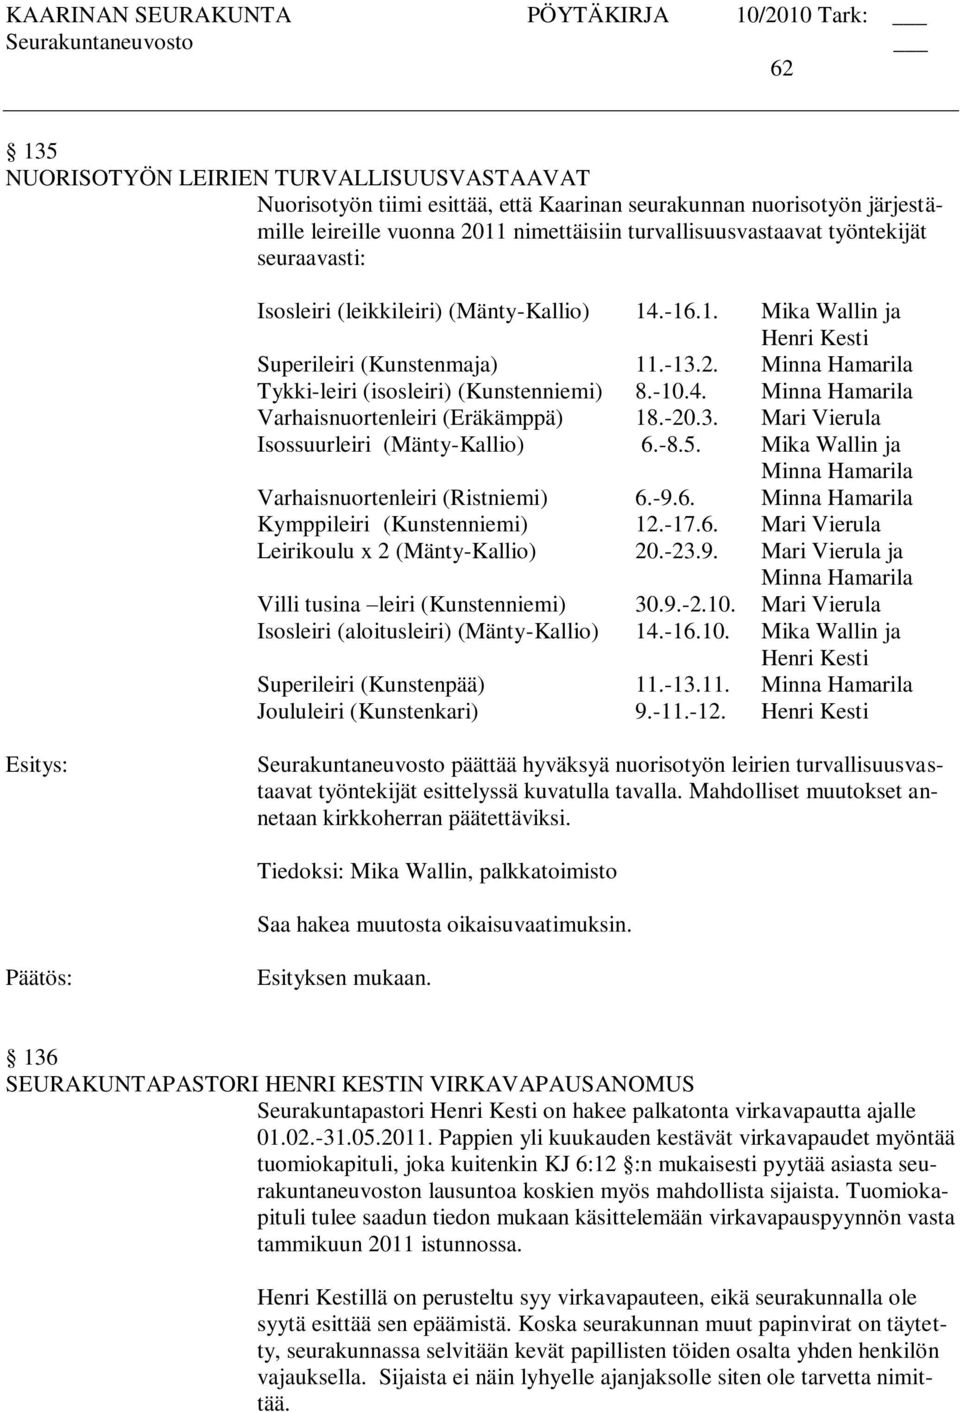 -20.3. Mari Vierula Isossuurleiri (Mänty-Kallio) 6.-8.5. Mika Wallin ja Minna Hamarila Varhaisnuortenleiri (Ristniemi) 6.-9.6. Minna Hamarila Kymppileiri (Kunstenniemi) 12.-17.6. Mari Vierula Leirikoulu x 2 (Mänty-Kallio) 20.